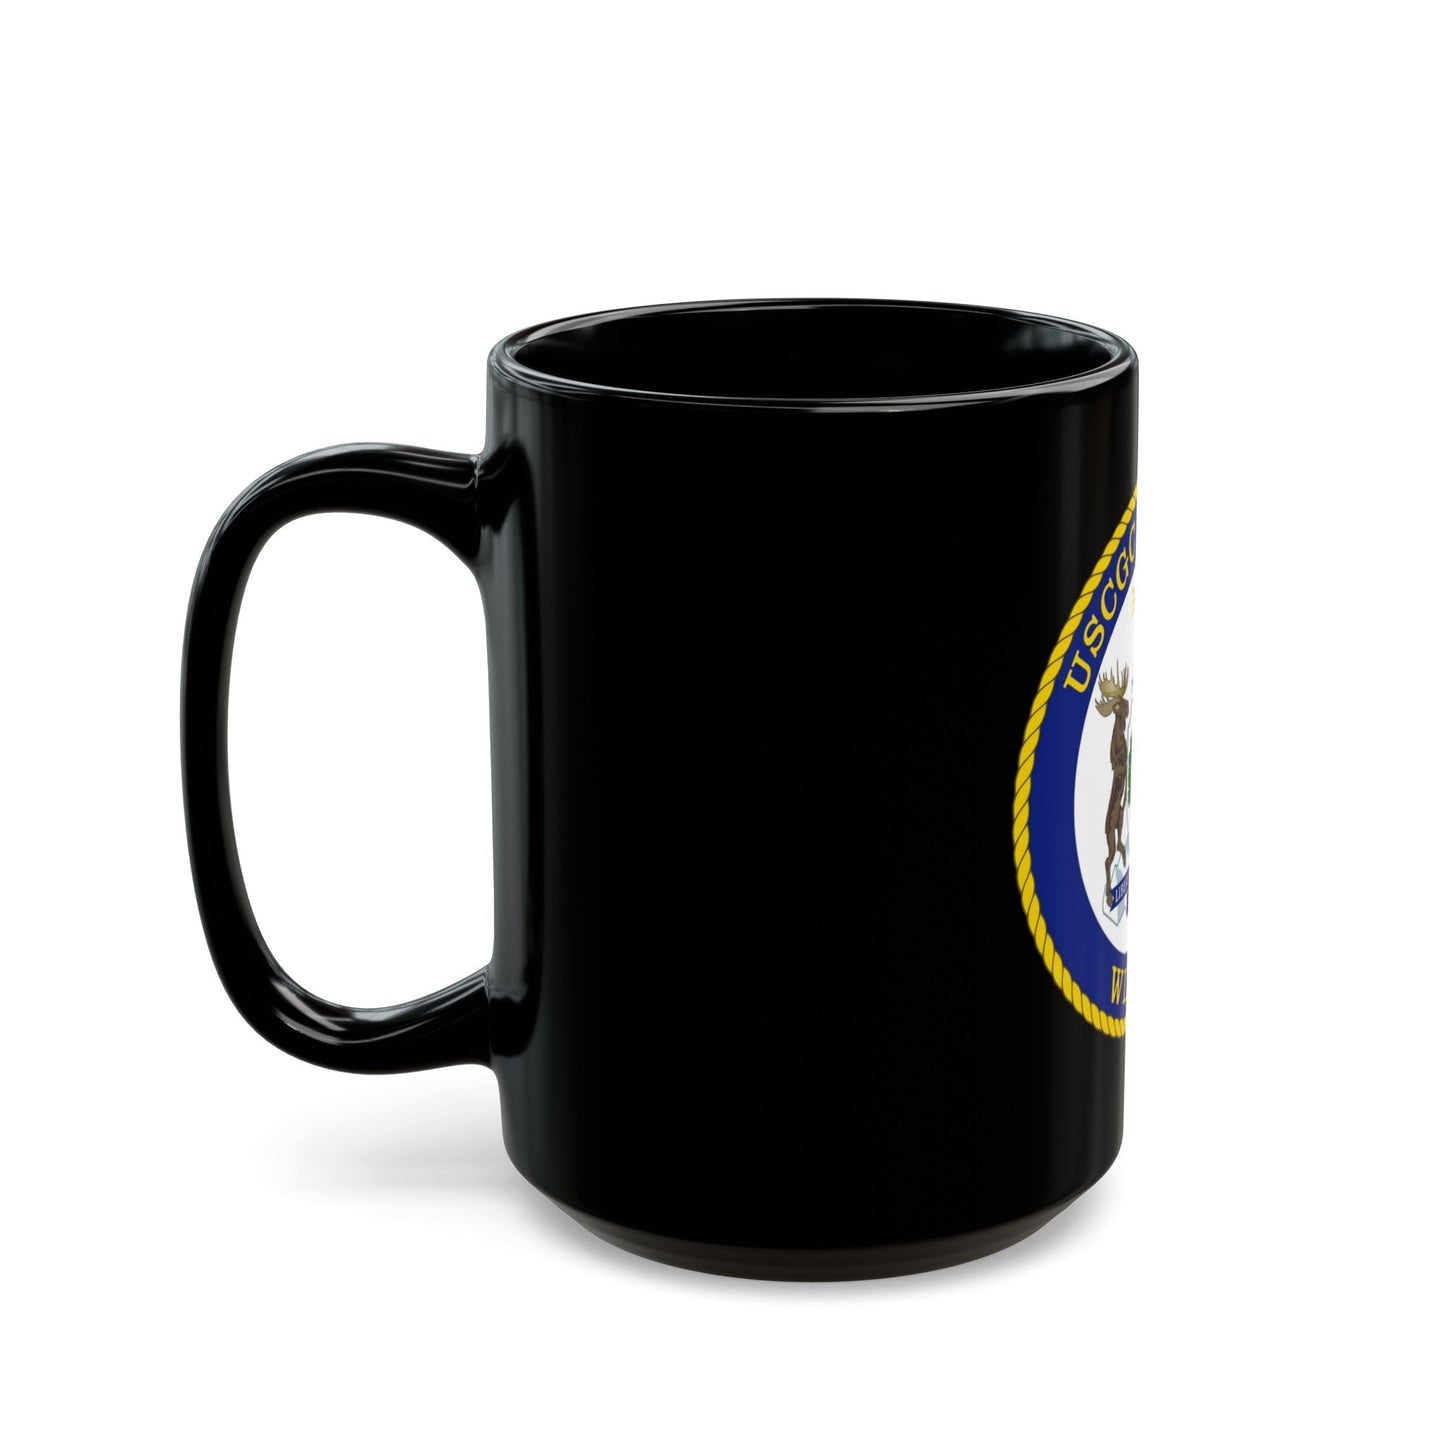 USCGC Hickory WLB 212 (U.S. Coast Guard) Black Coffee Mug-The Sticker Space